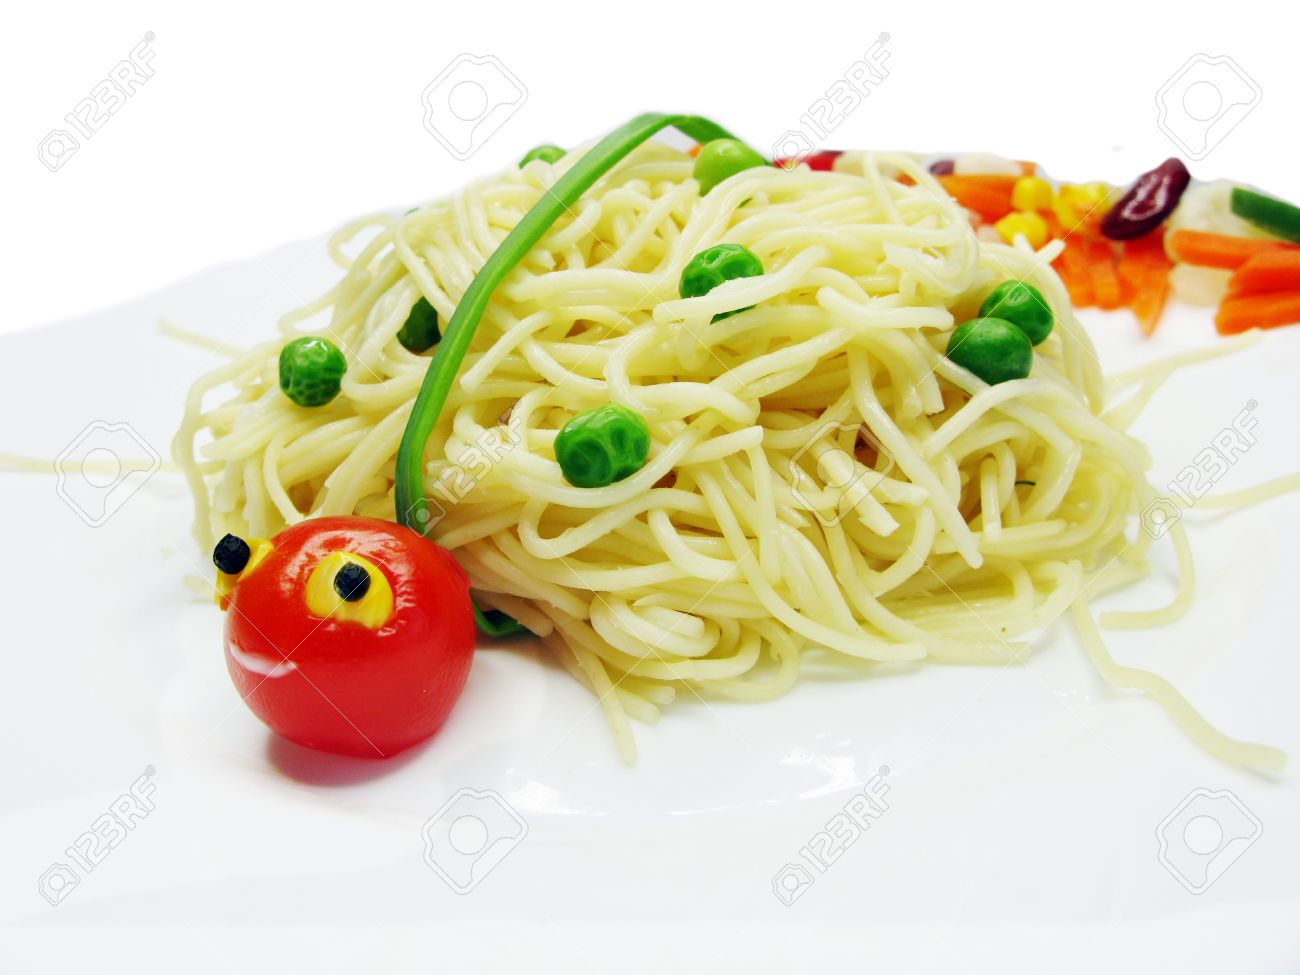 20920176 kreative spaghetti essen garnieren mit wurst marienk fer form lizenzfreie bilder.jpg